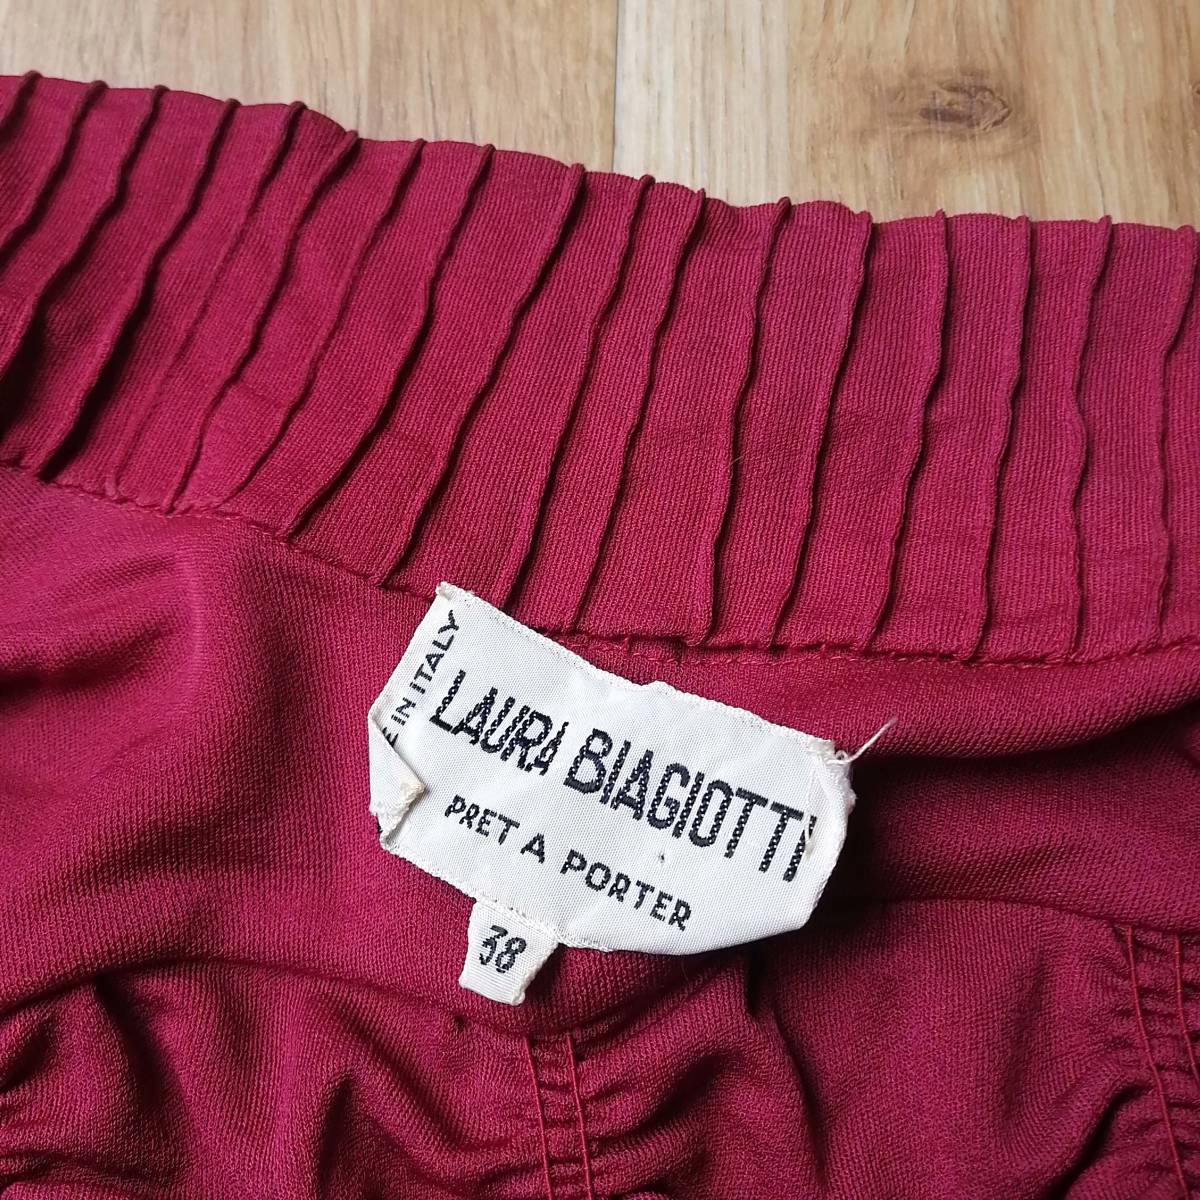 イタリア製 Laura Biagiotti ラウラ ビアジョッティ シャーリングシャツ 長袖シャツ サイズ38 ヴィンテージ レトロ 23-1229bu06_タグの縫い一部取れ